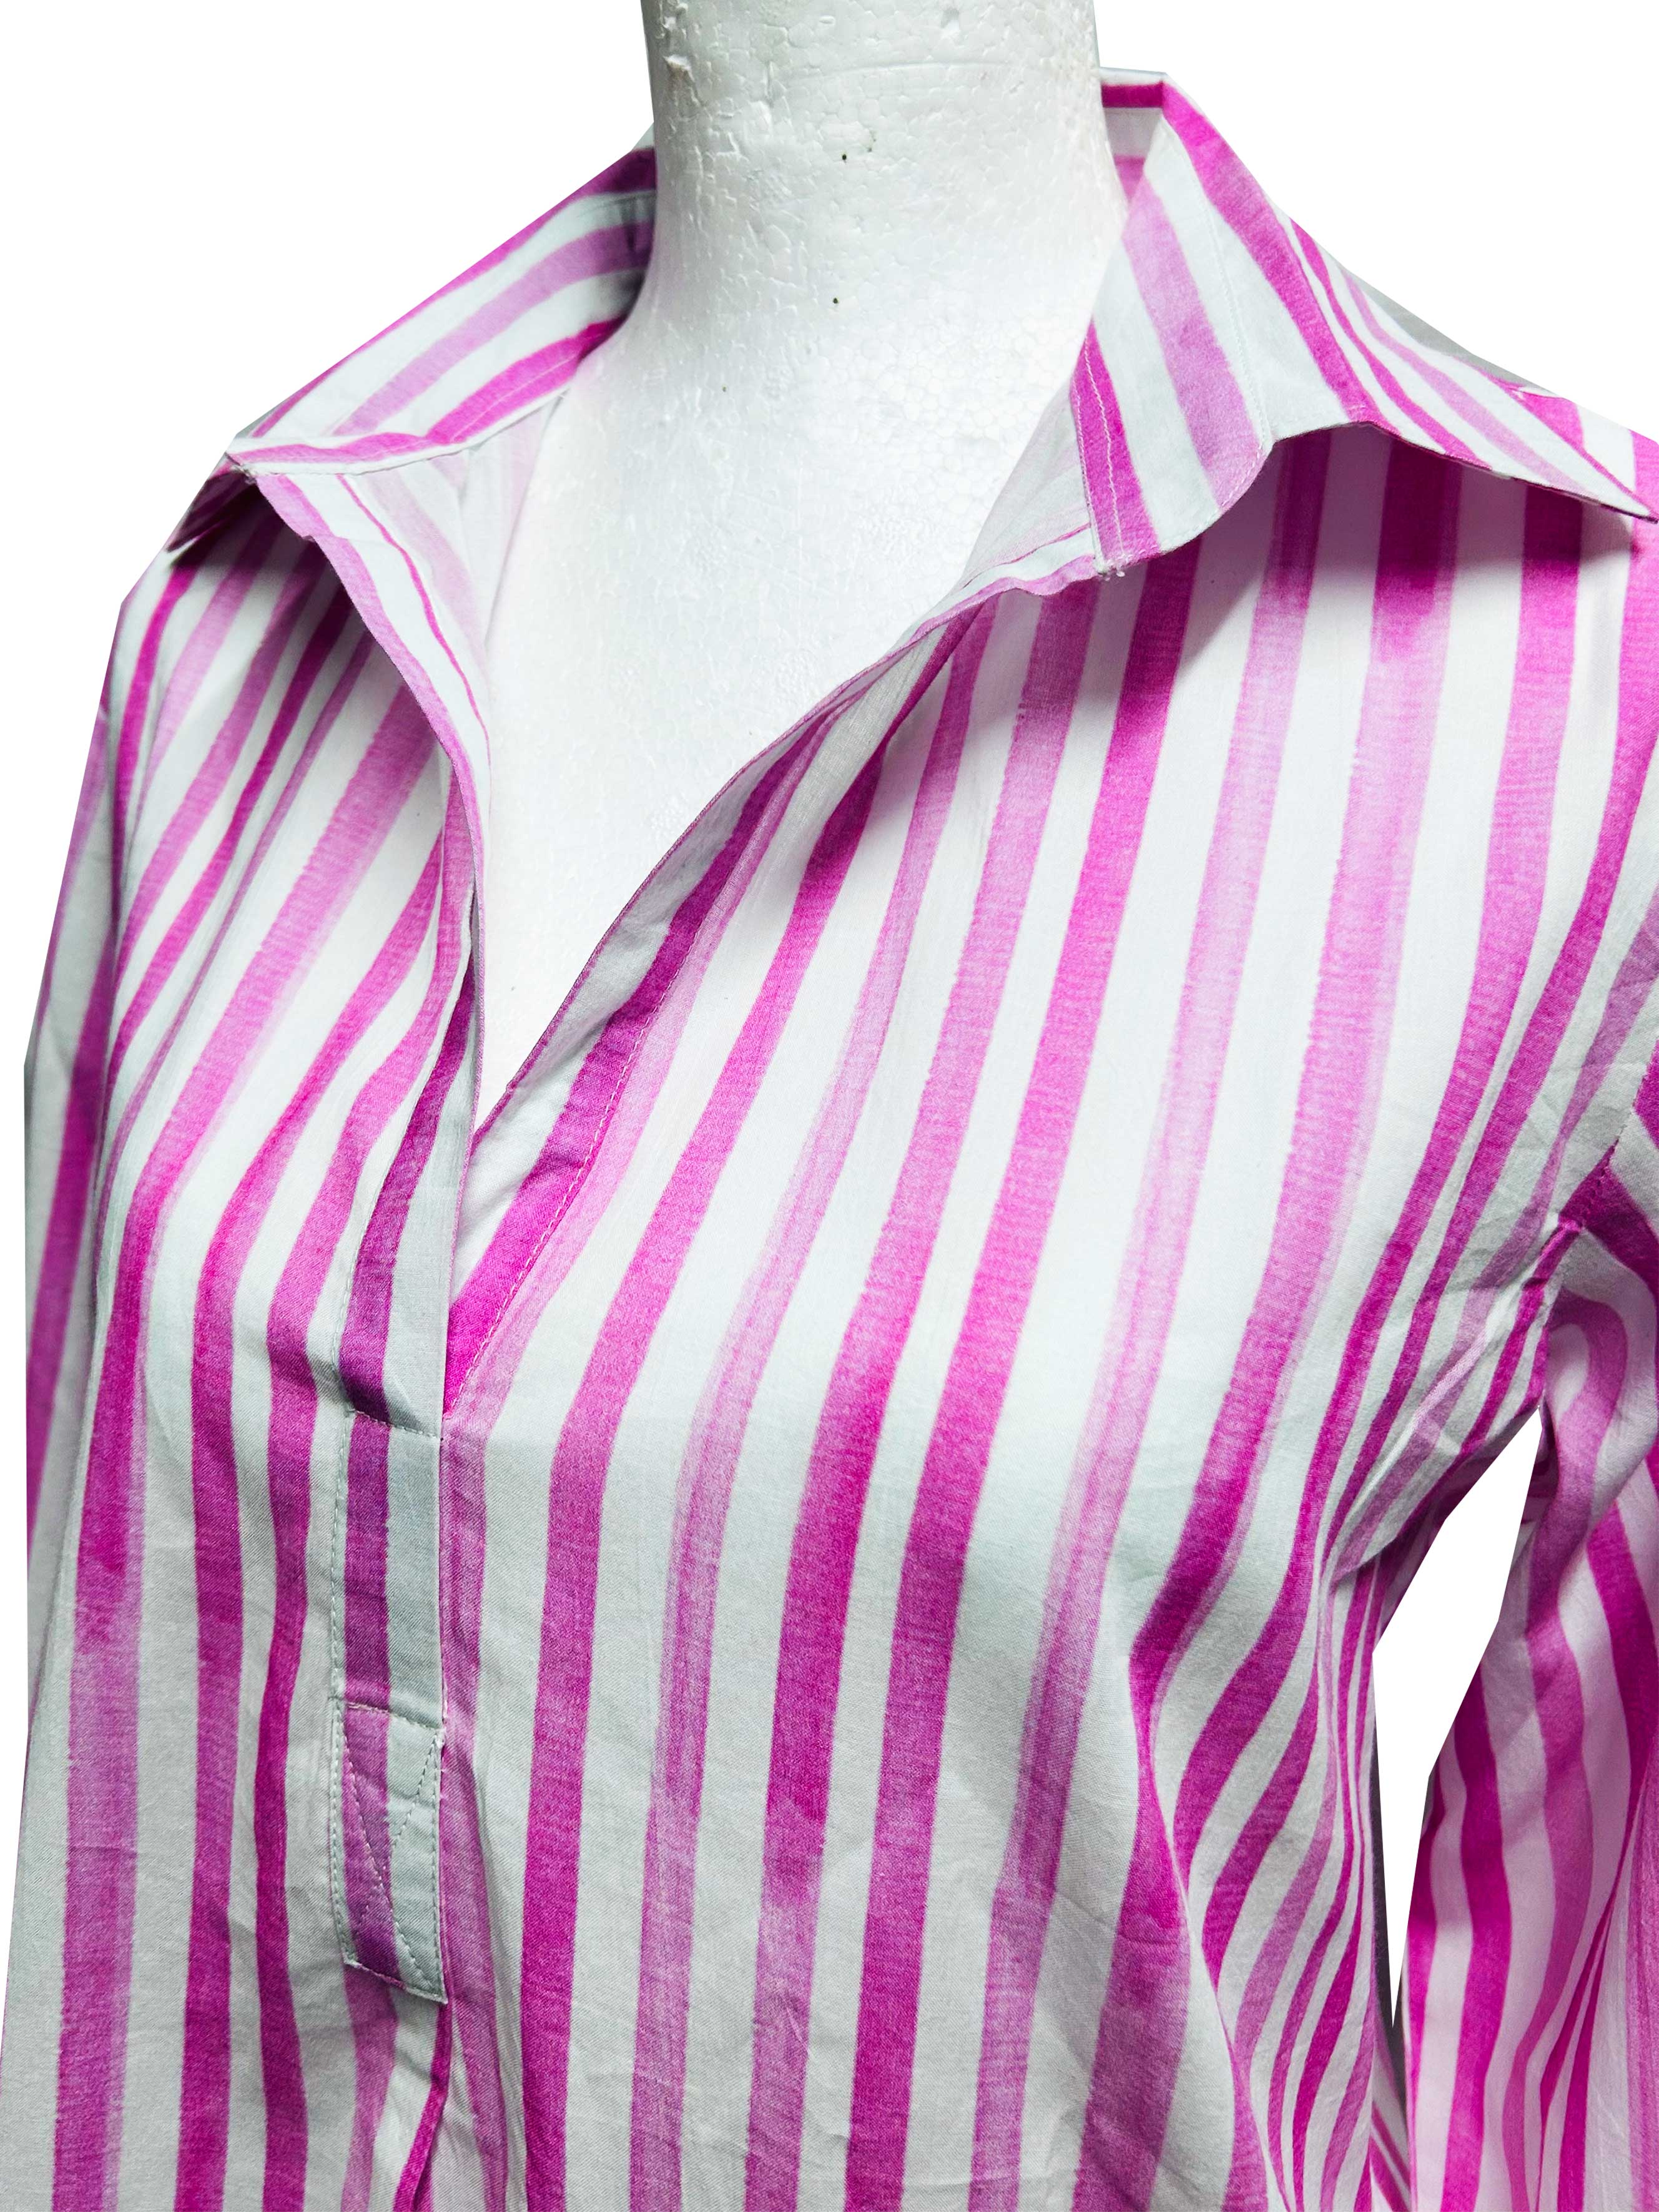 Julia Shirt - Candy Stripe - Cotton